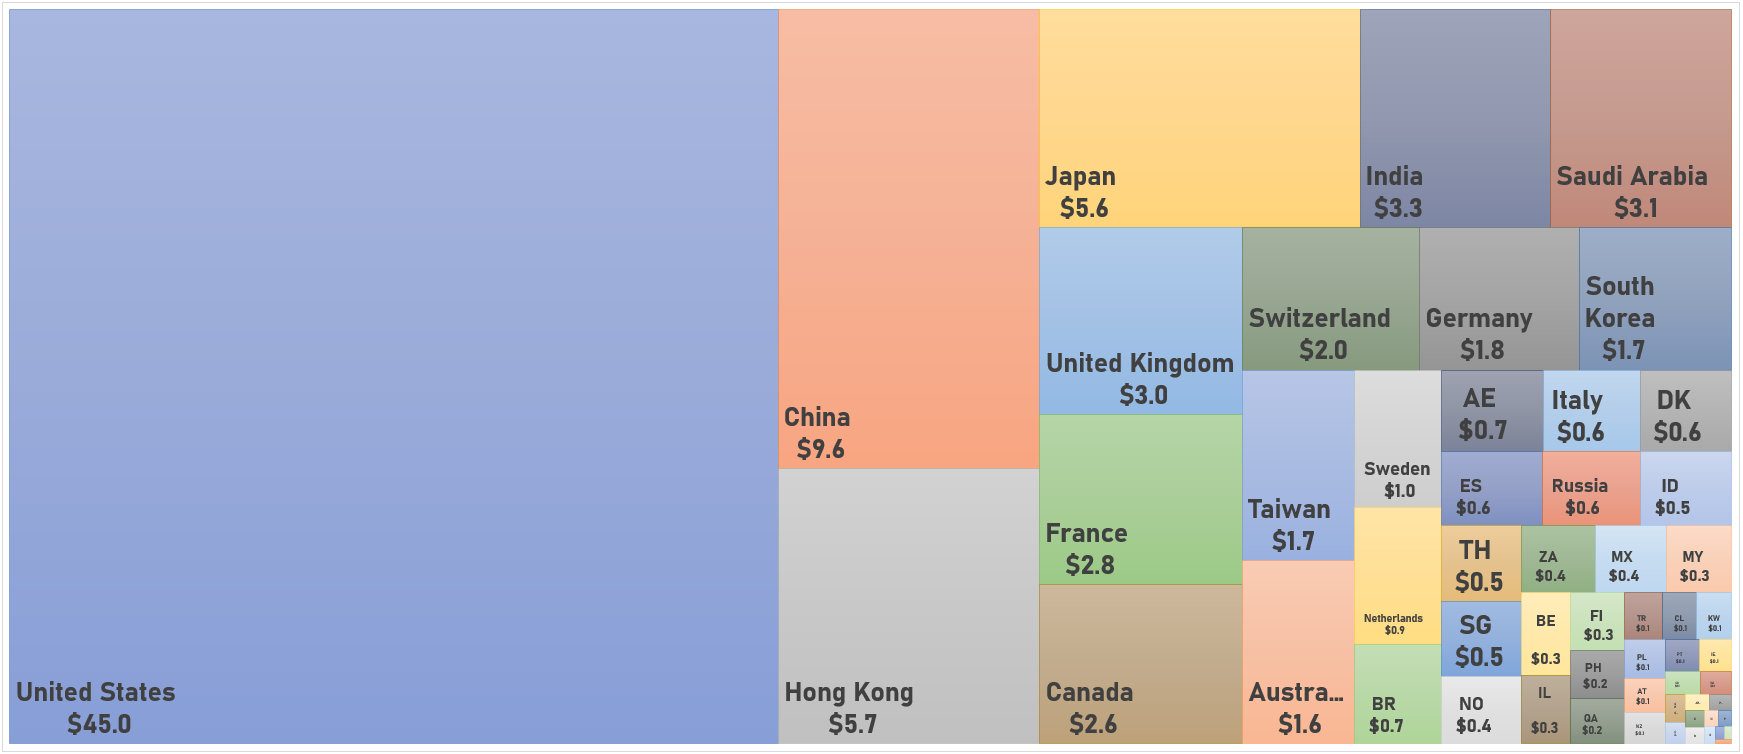 World Market Capitalization (US$ Trillion) | Sources: phipost.com, FactSet data